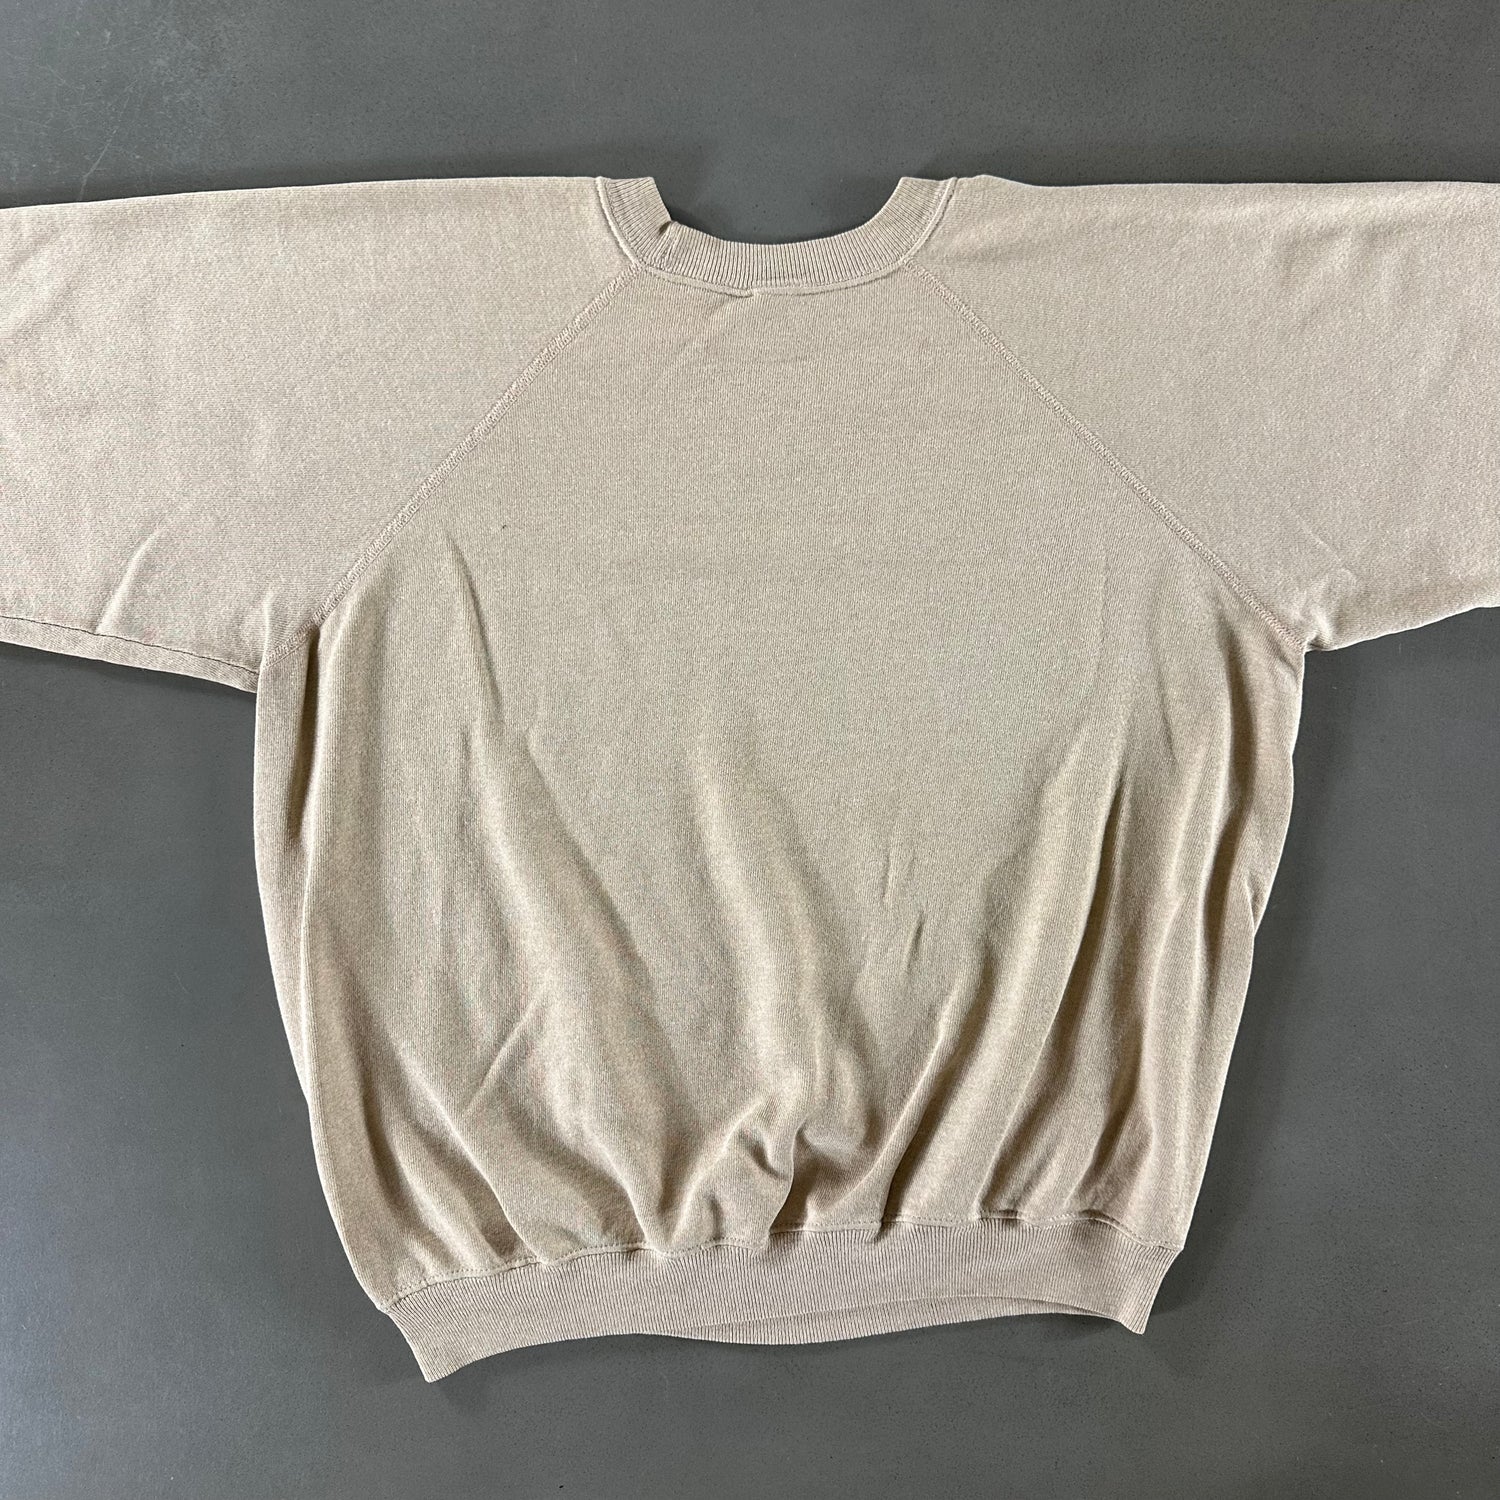 Vintage 1990s San Diego Sweatshirt size XL